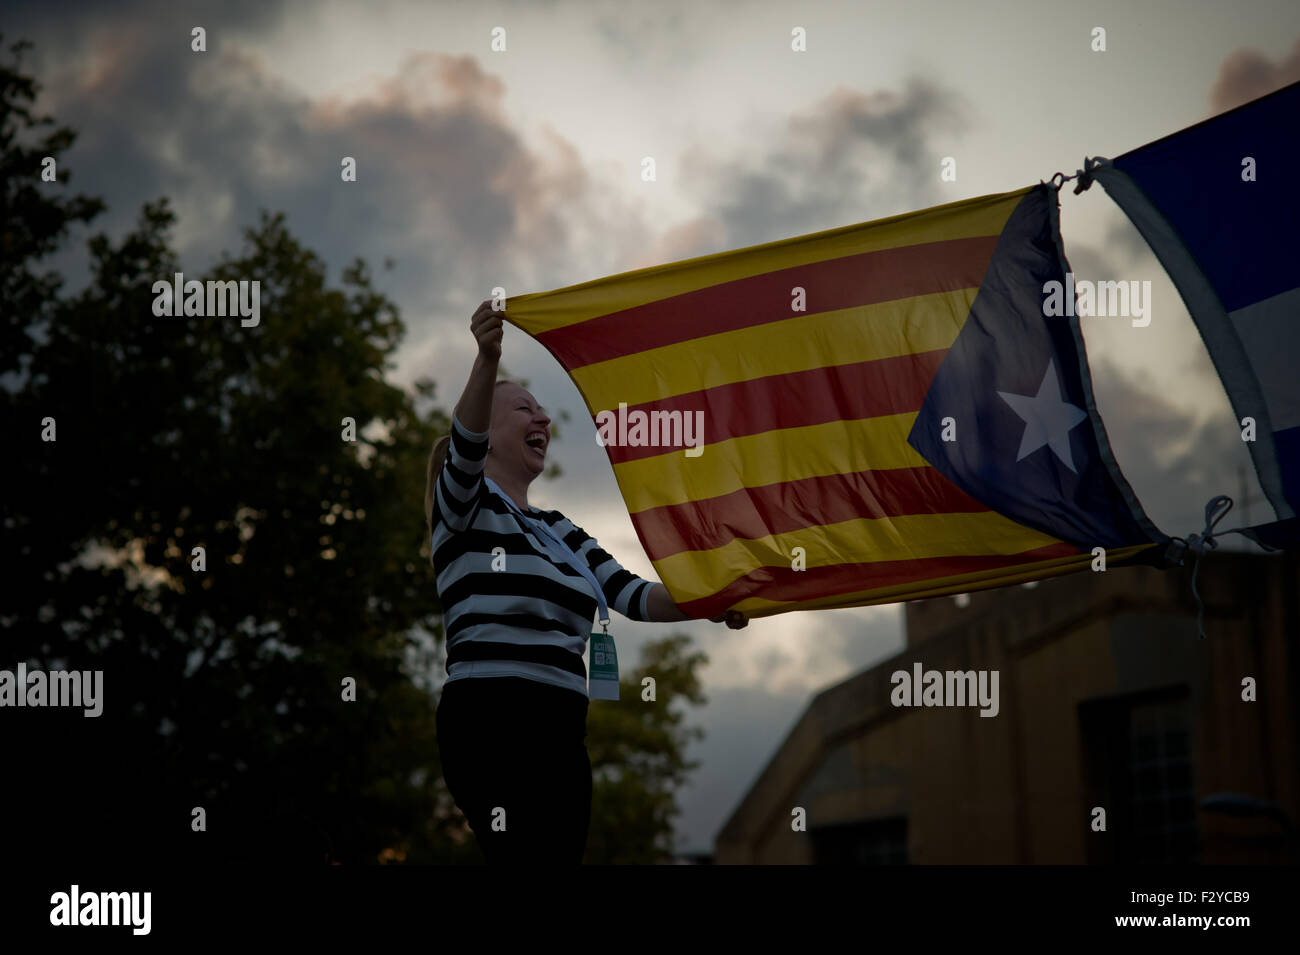 Barcelone, Catalogne, Espagne. 25 Septembre, 2015. Une femme tient un estelada drapeau indépendantiste catalan () au cours de la dernière campagne de rallye 'Junts pel Si' (ensemble pour Oui) à Barcelone le 25 septembre, 2015. Dimanche prochain auront lieu des élections régionales en Catalogne. Les sondages indiquent que l'indépendance parties pourraient obtenir la majorité absolue. Crédit : Jordi Boixareu/ZUMA/Alamy Fil Live News Banque D'Images